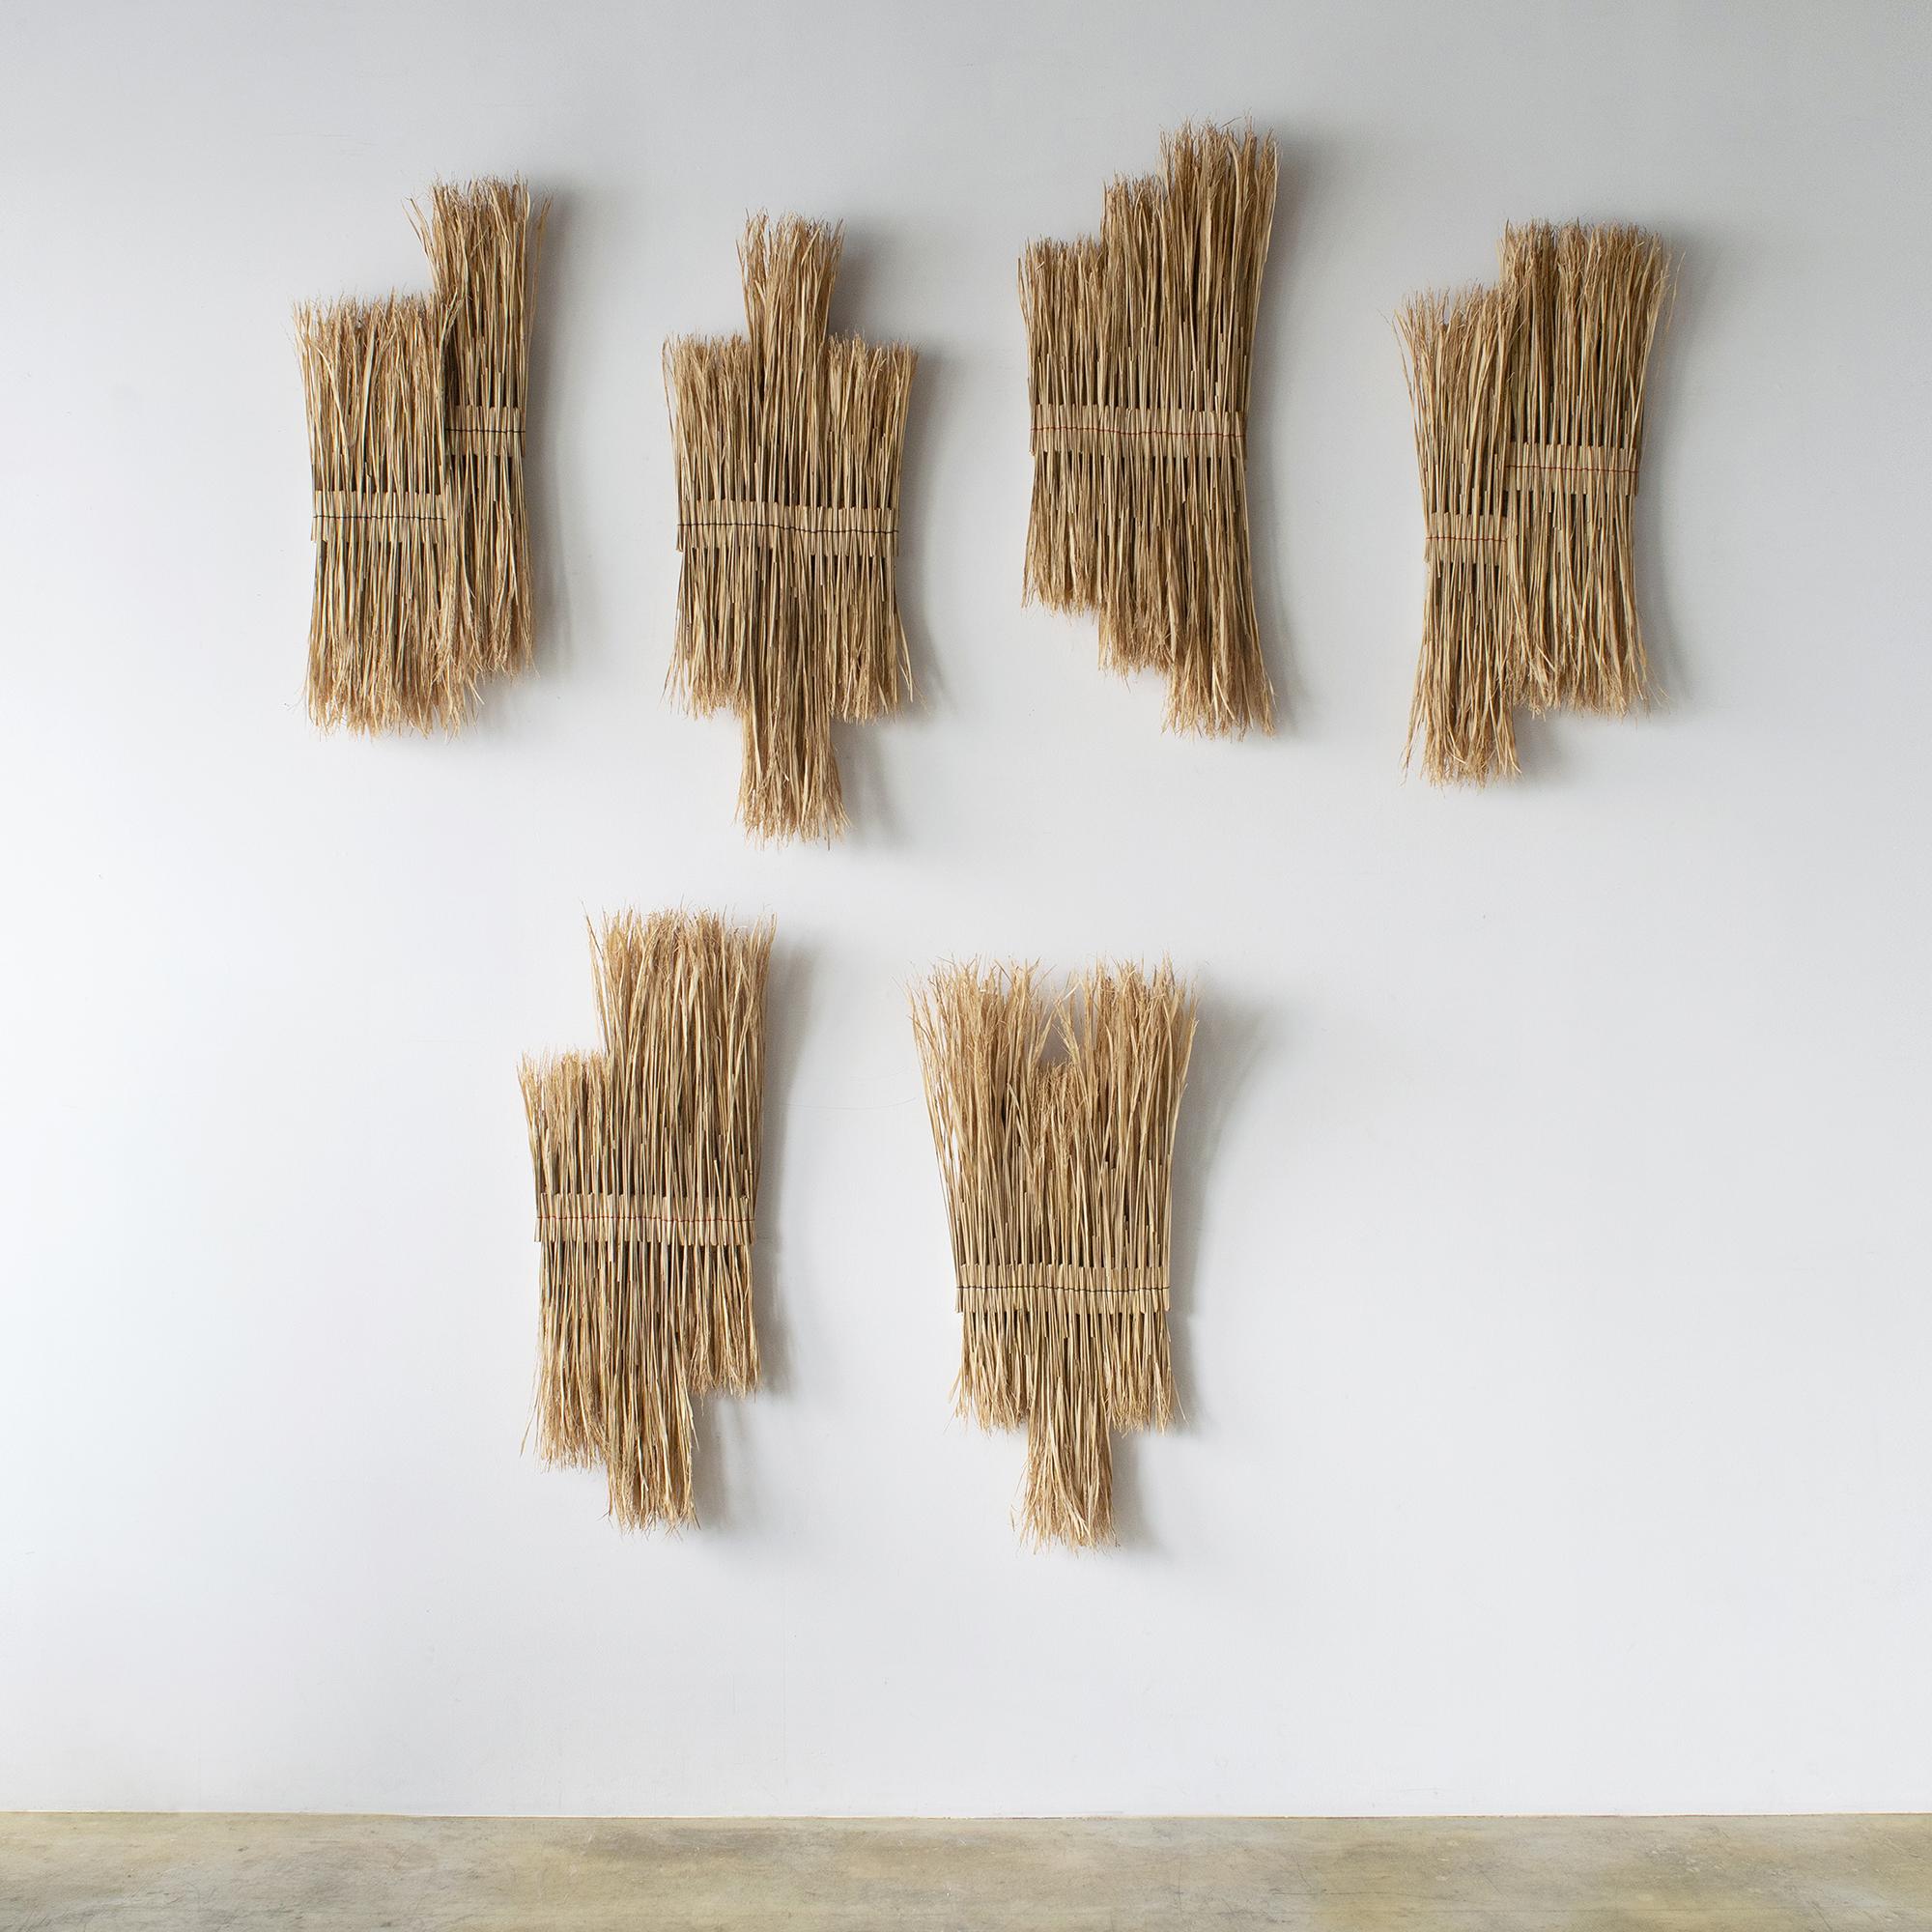 Organic Modern ARKO Wall Art12 Contemporary Art Japanese Craft Rice Straw Art Wall Sculpture For Sale